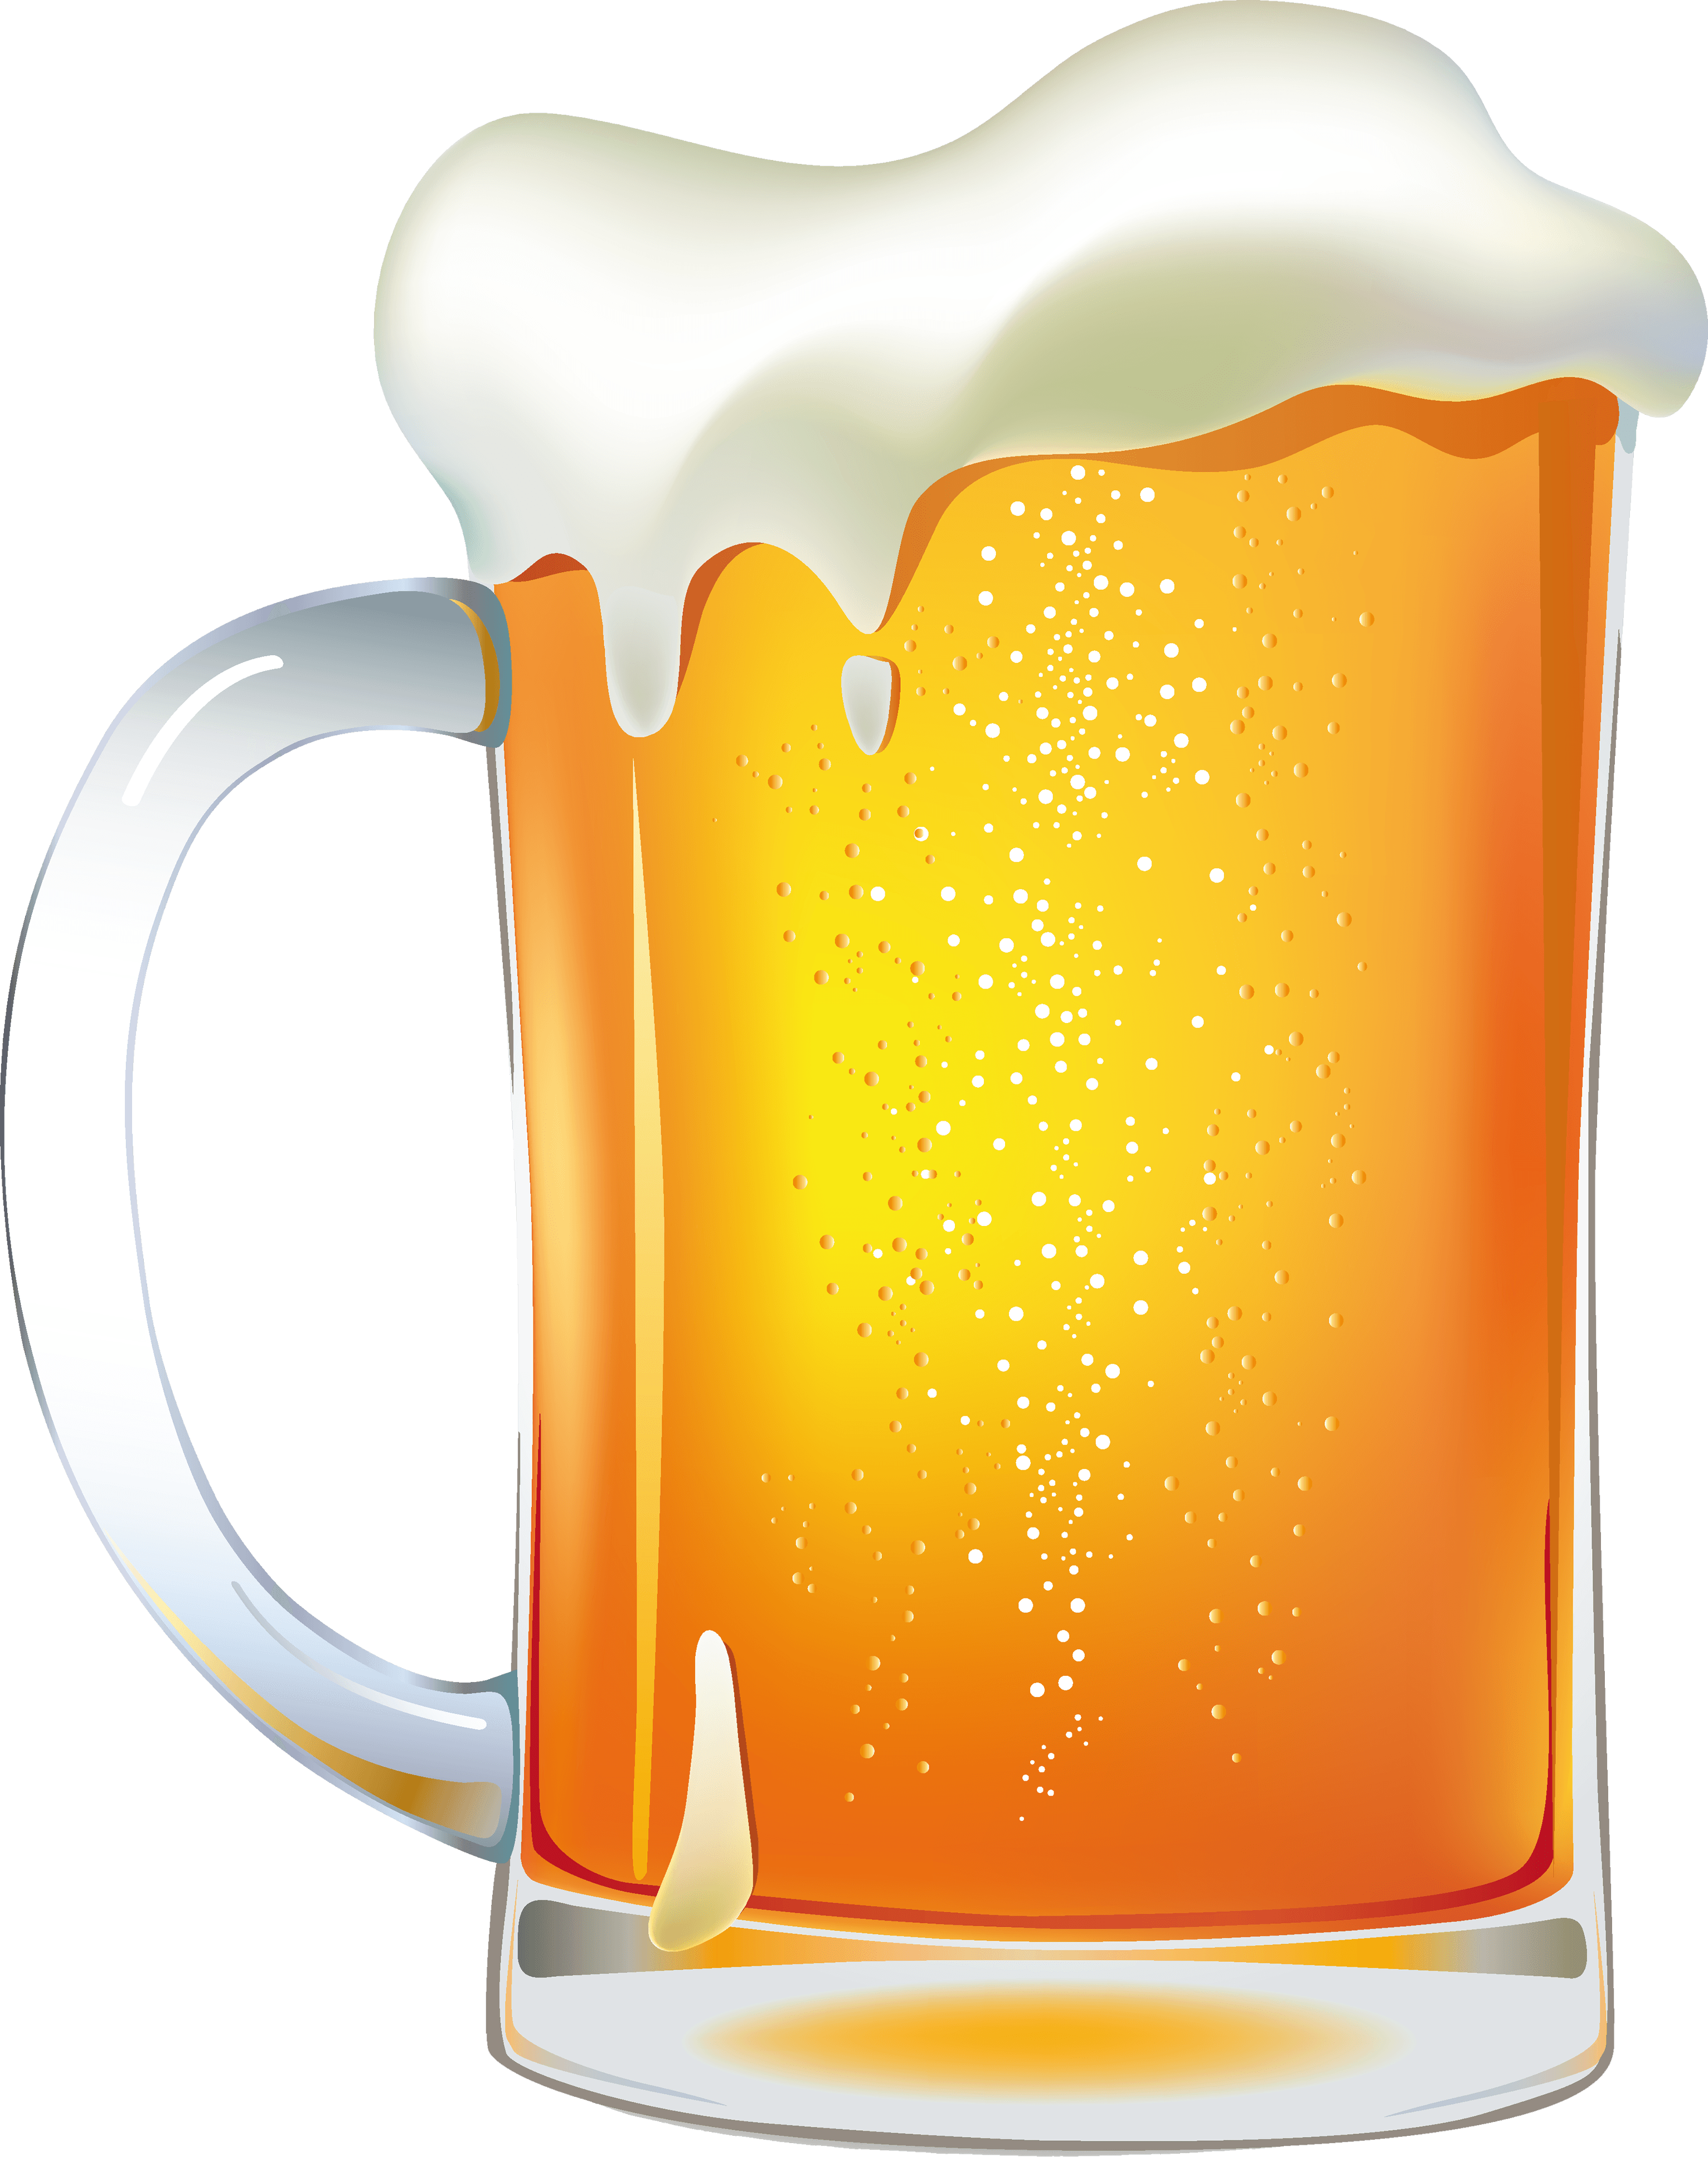 beer illustration free download